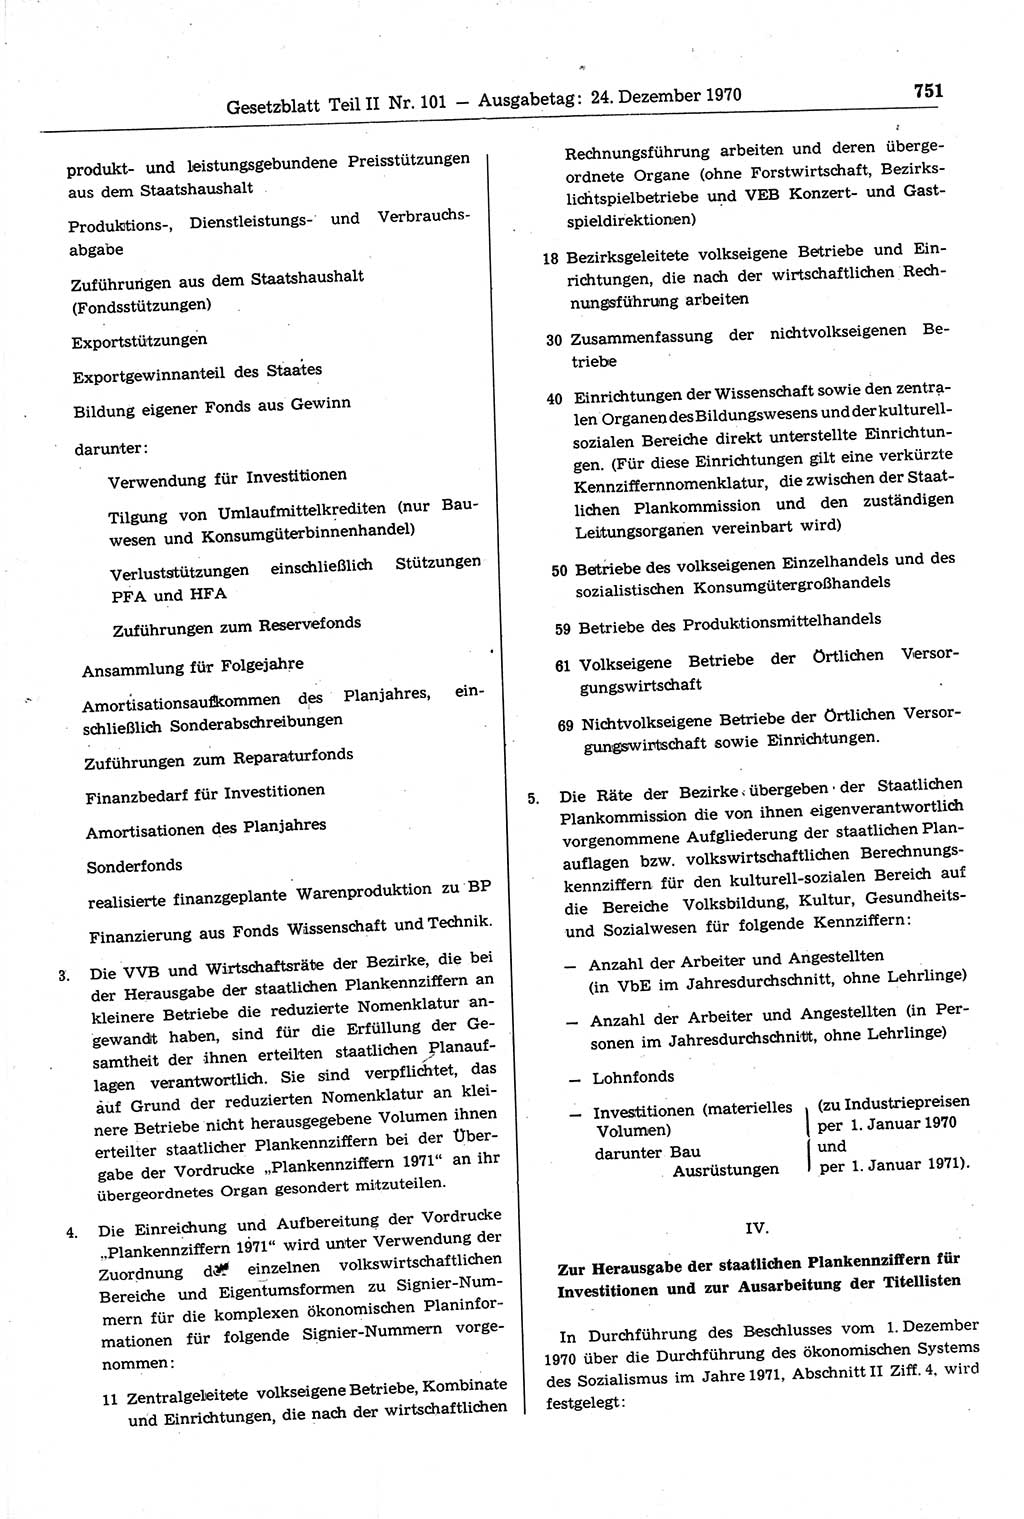 Gesetzblatt (GBl.) der Deutschen Demokratischen Republik (DDR) Teil ⅠⅠ 1970, Seite 751 (GBl. DDR ⅠⅠ 1970, S. 751)